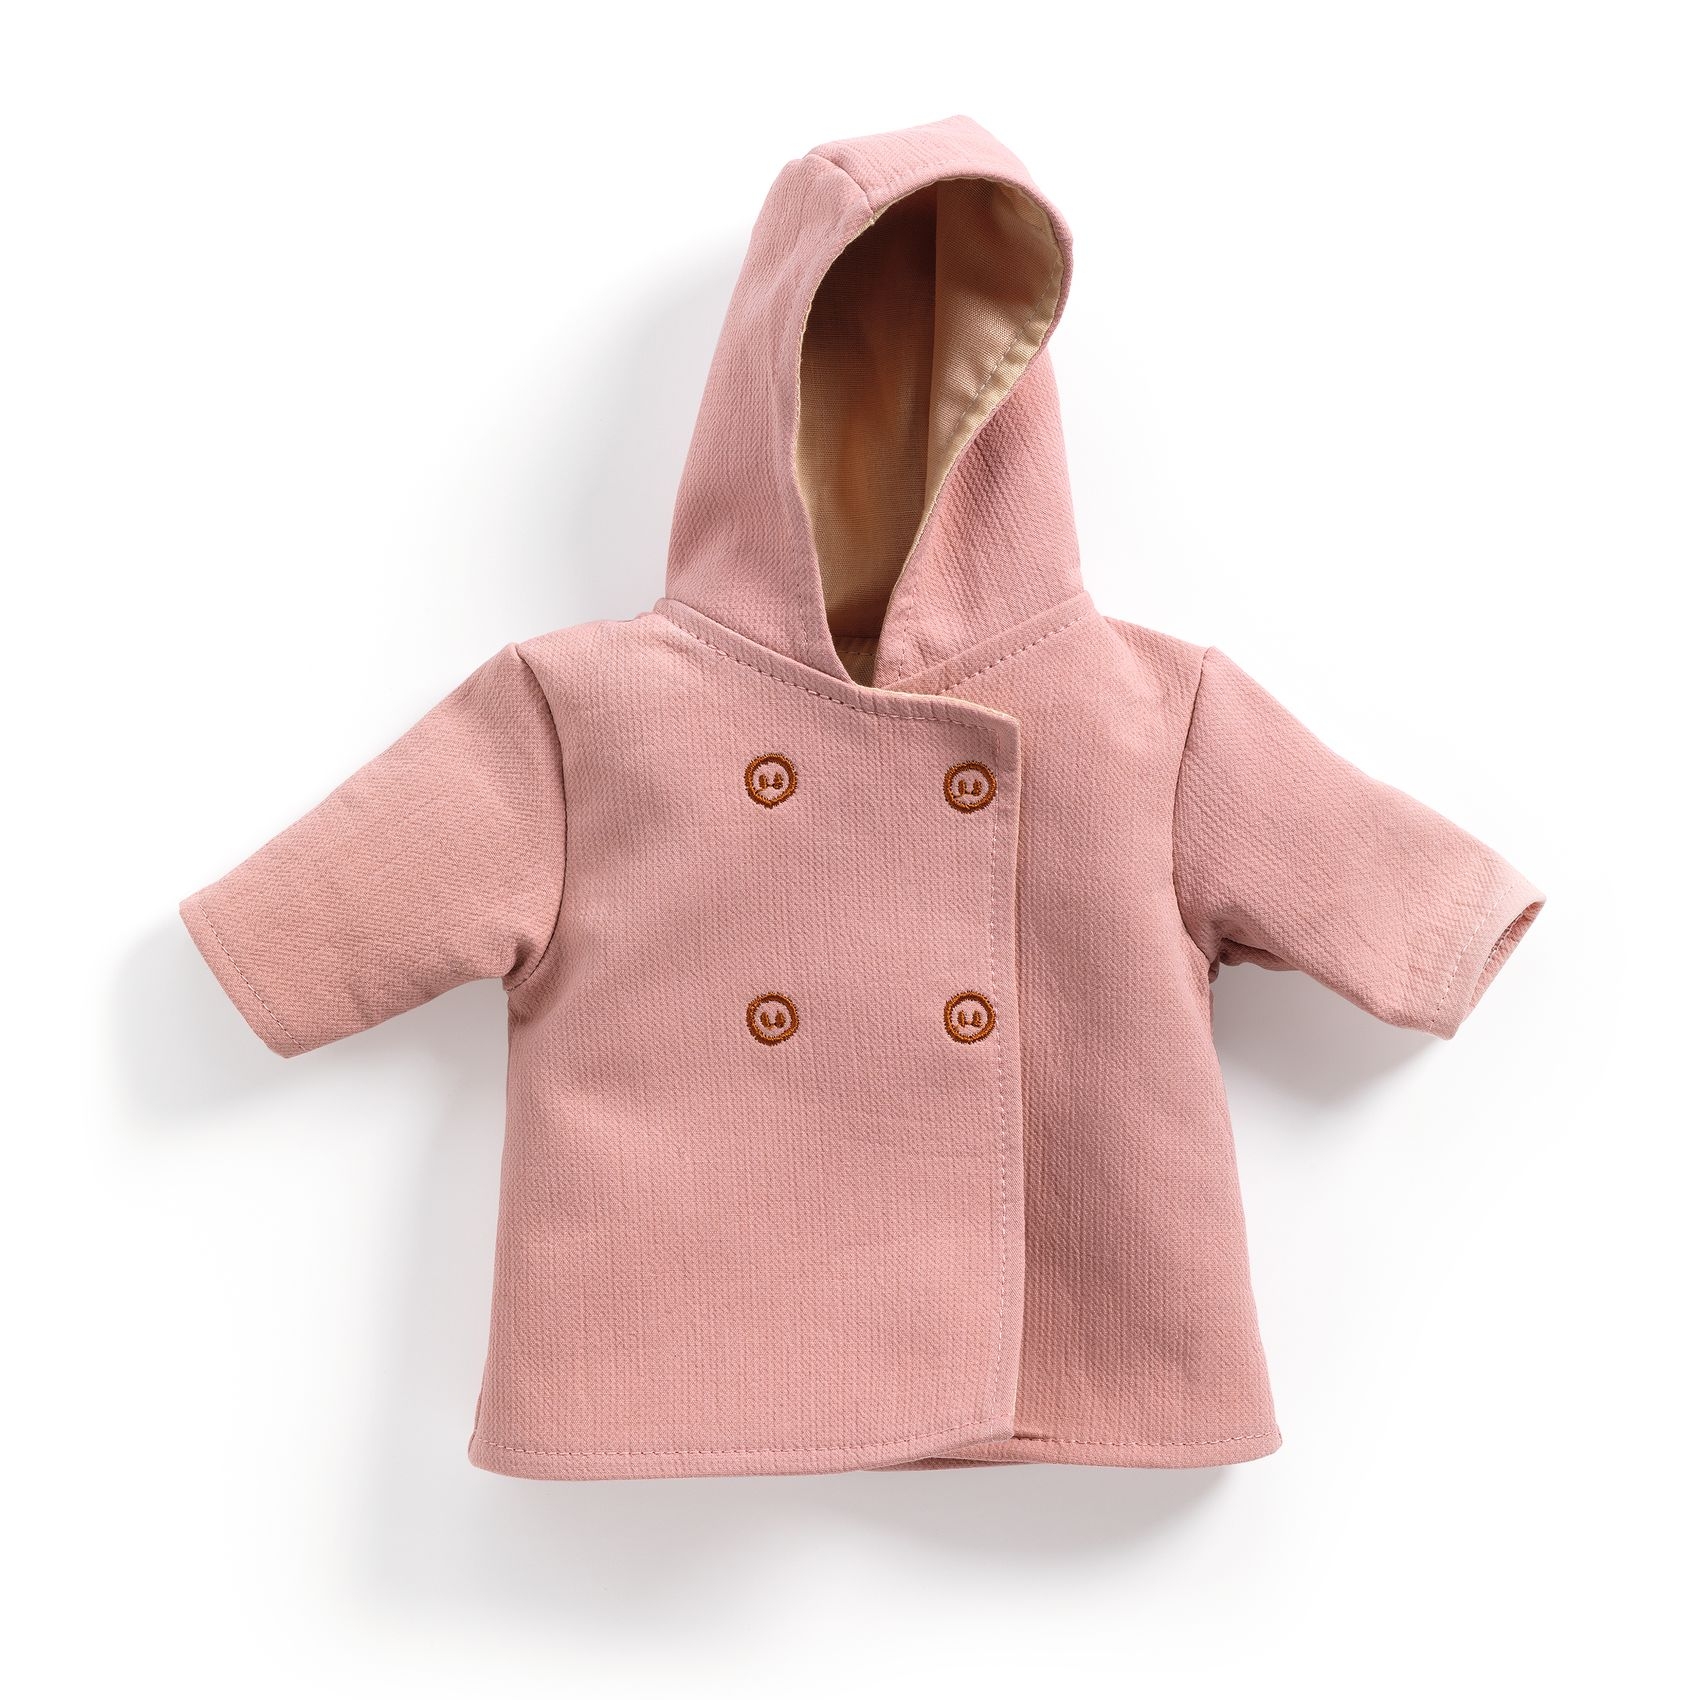 Játékbaba ruha - Kapucnis kabát - Hooded coat - 0